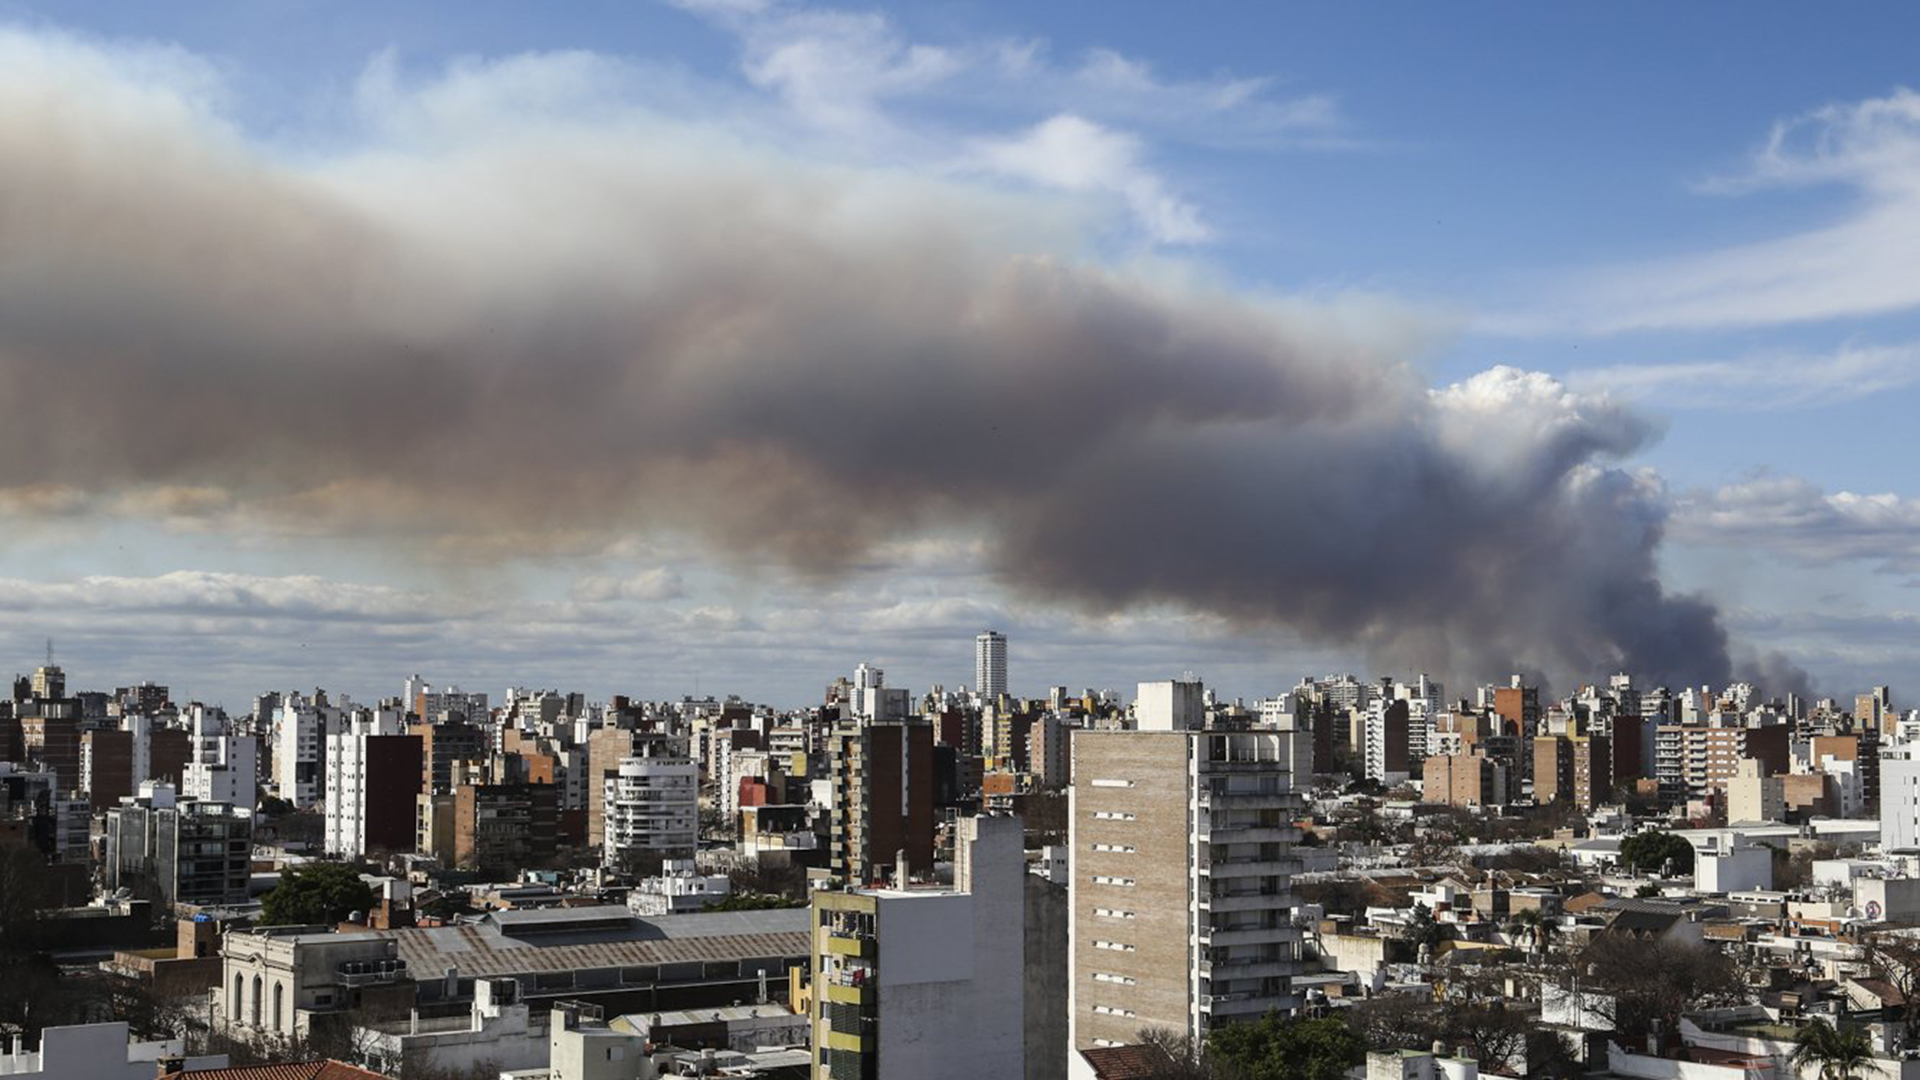 "No son nubes, es humo", dice el periodista Andrés Cánepa (@Intibonomo)